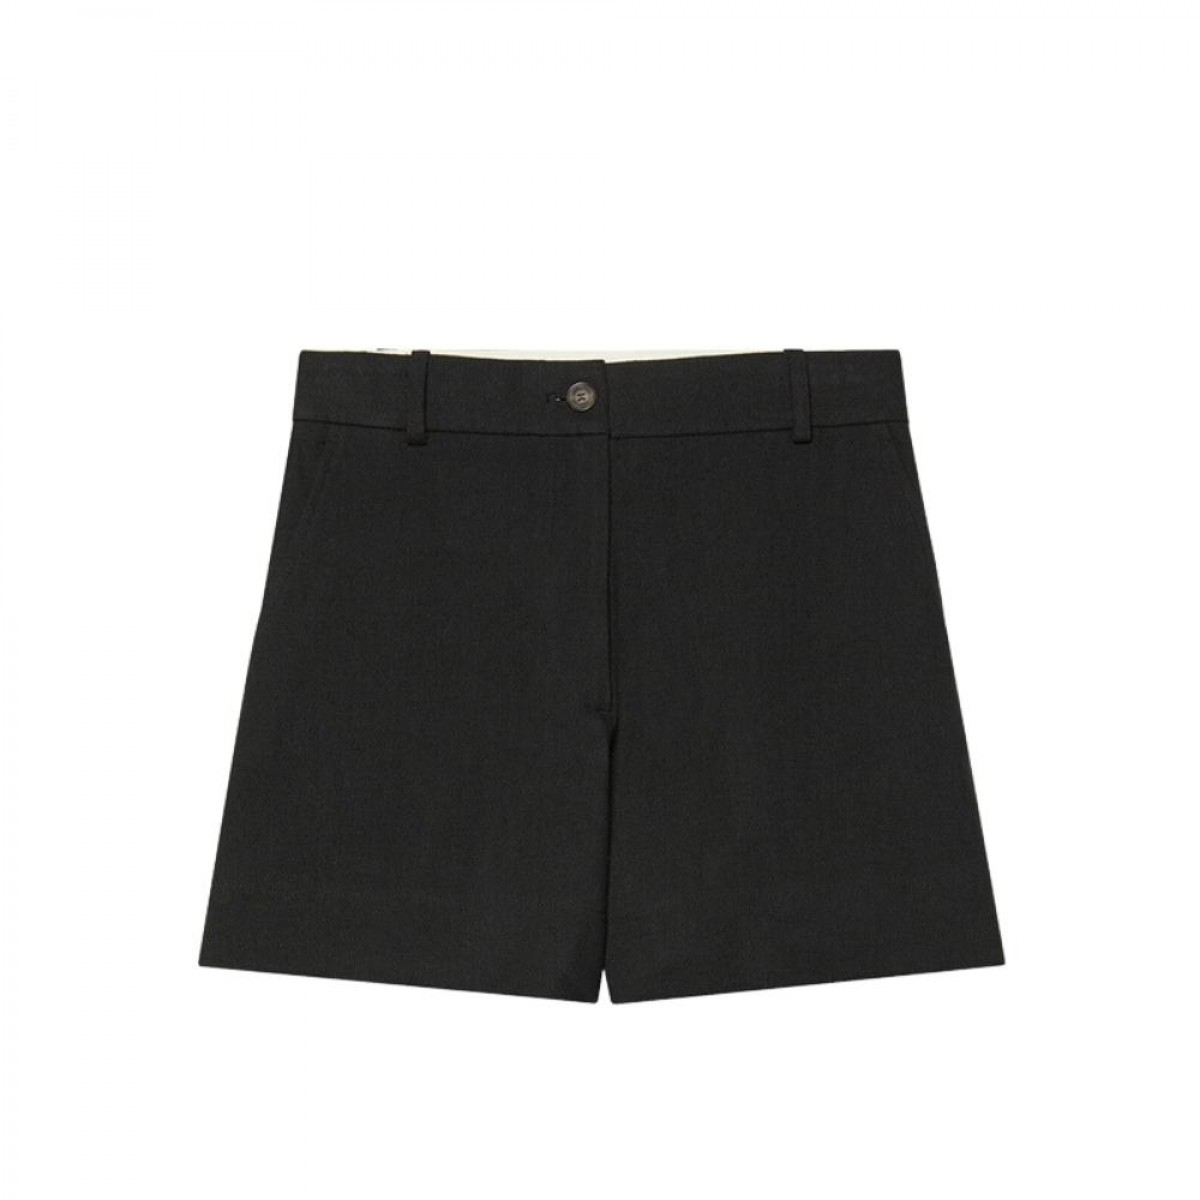 nixia shorts - black - front